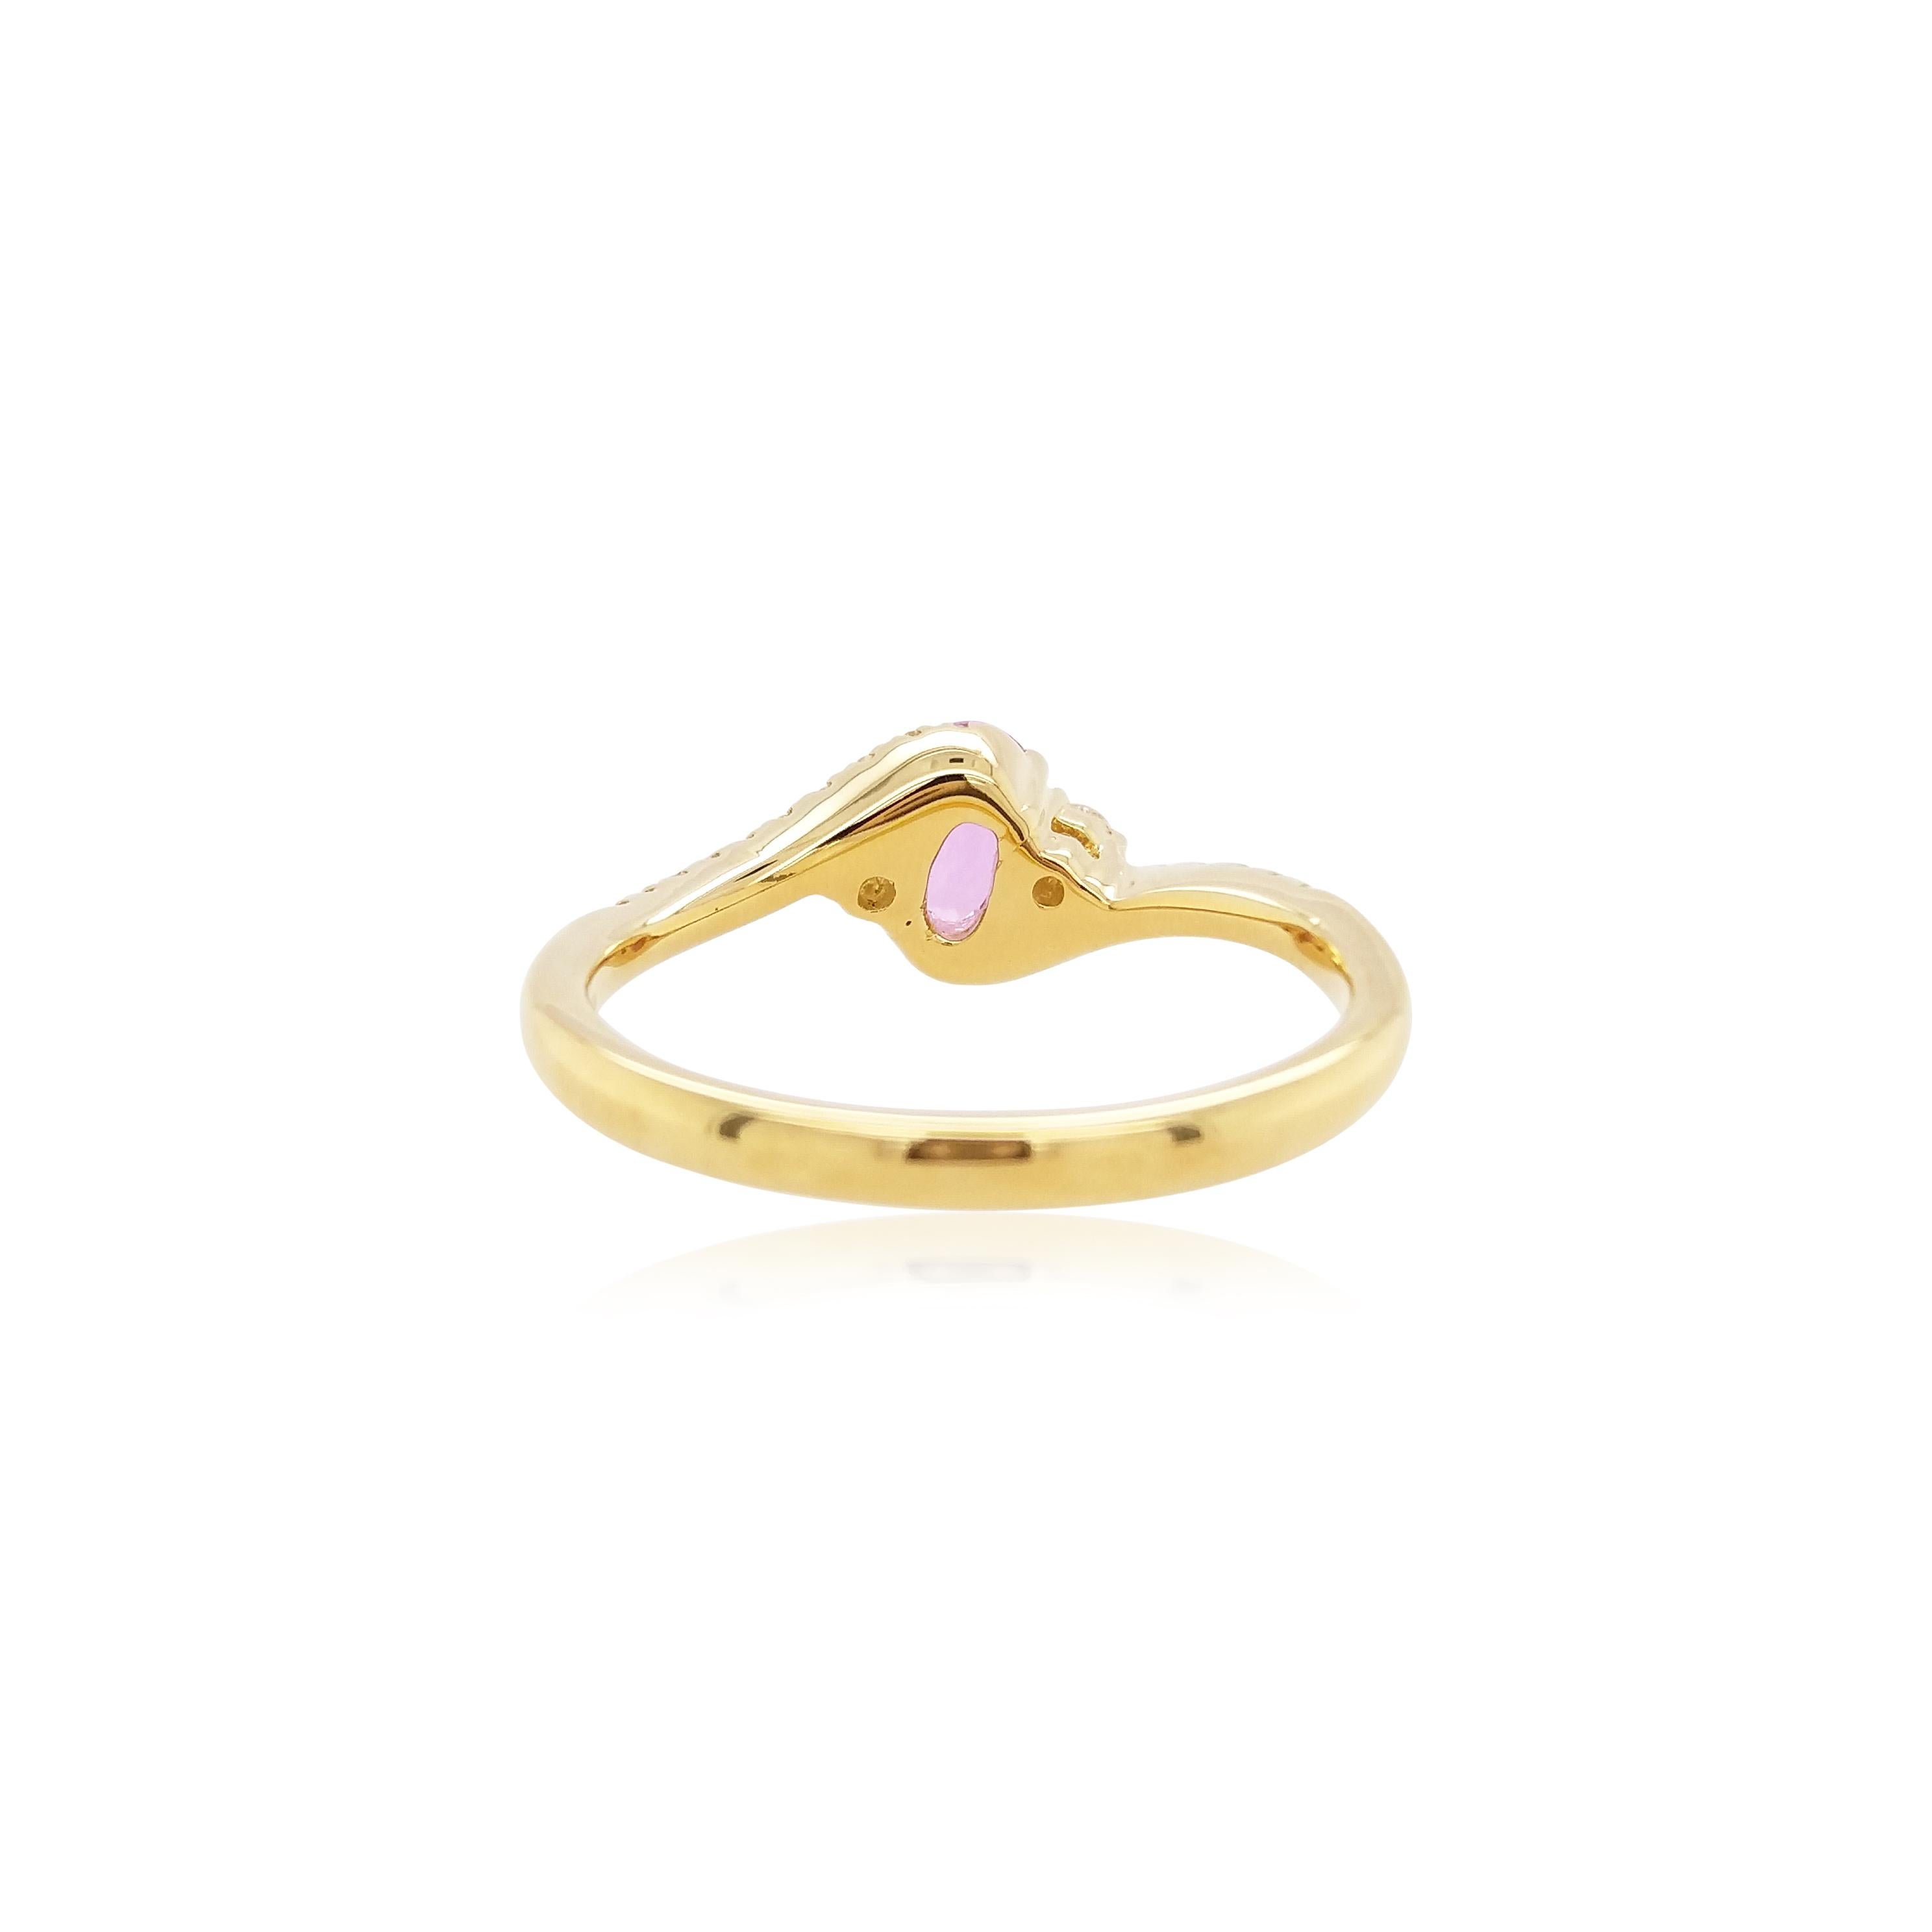 Bei diesem zarten Ring steht ein glänzender rosafarbener Saphir im Mittelpunkt des Designs. Die spektakulären Farbtöne des Saphirs werden durch die Fassung aus 18 Karat Gelbgold und die eleganten Diamantschultern perfekt zur Geltung gebracht. Dieser